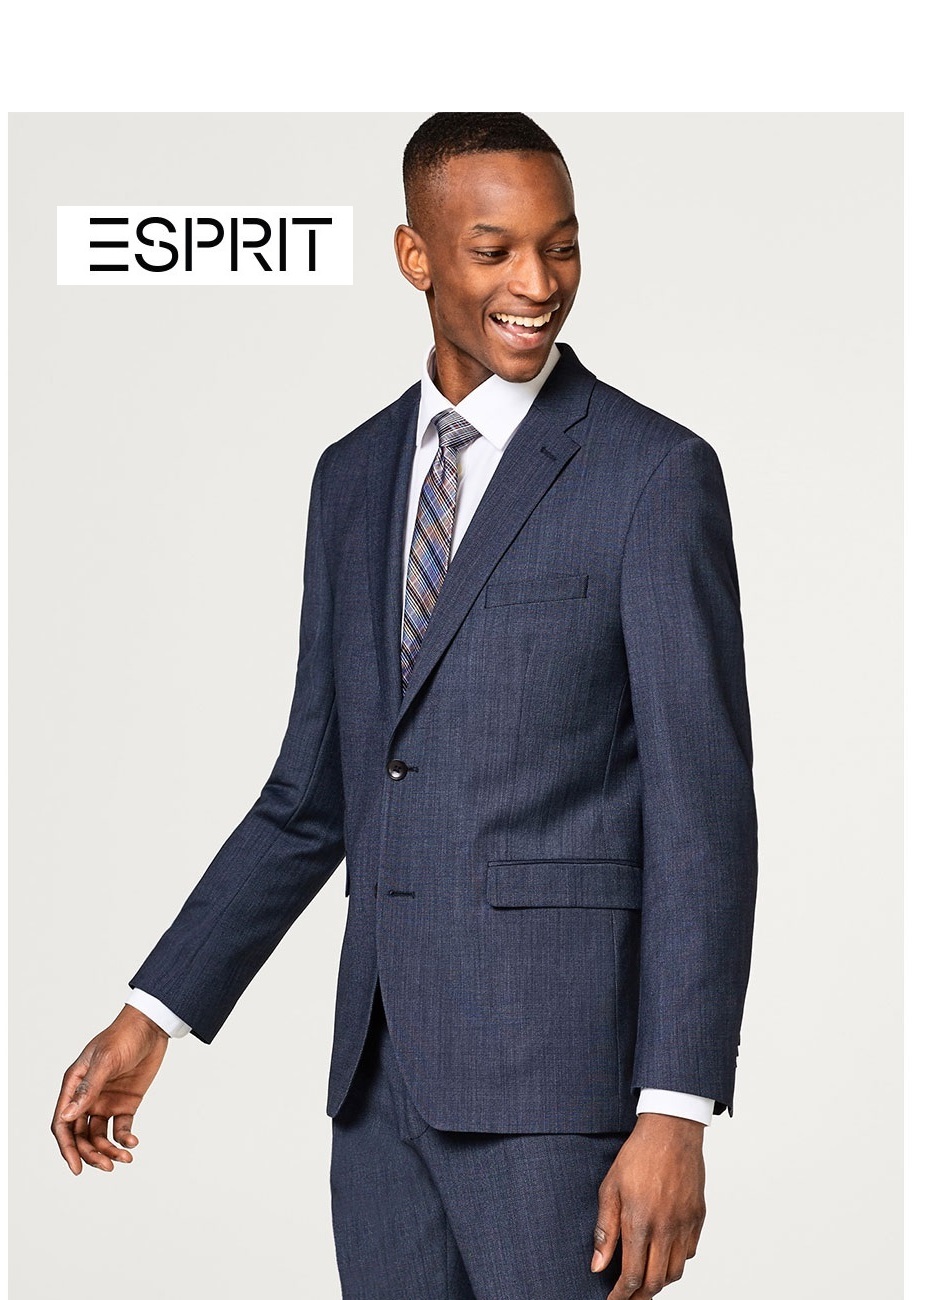 ESPRIT - men's suits 